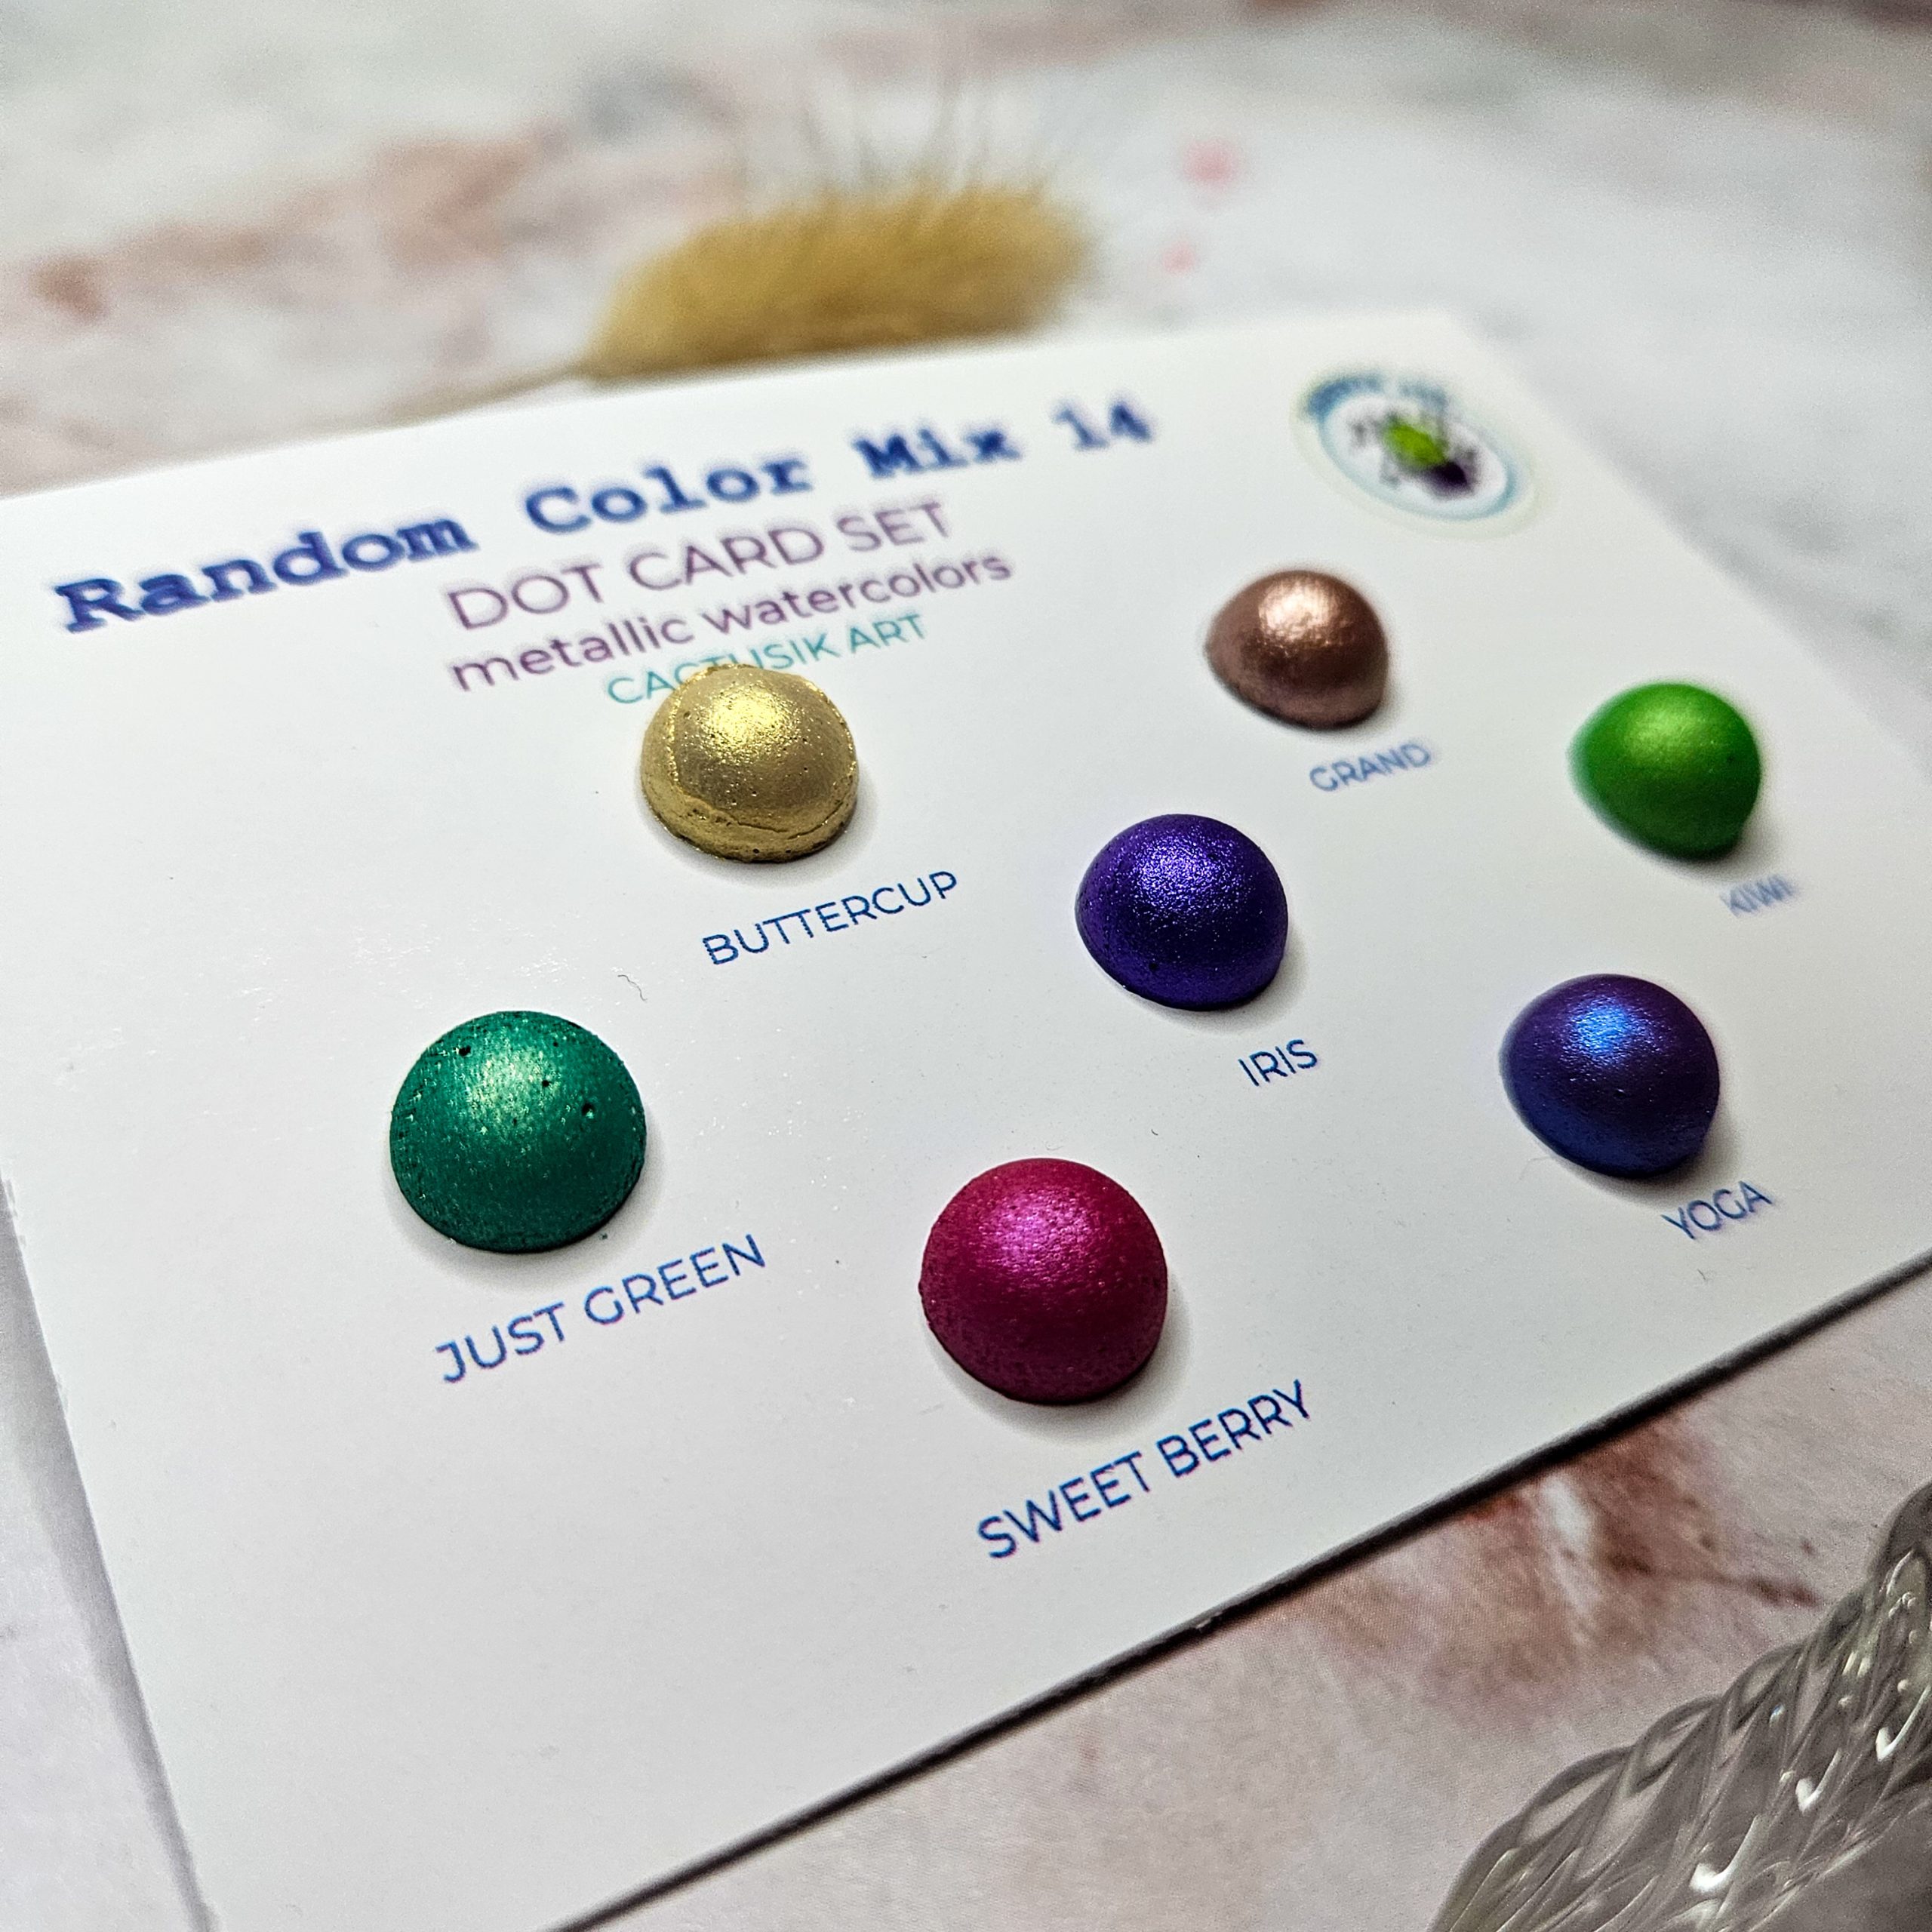 Random Color Mix 14 – Dot Card Set